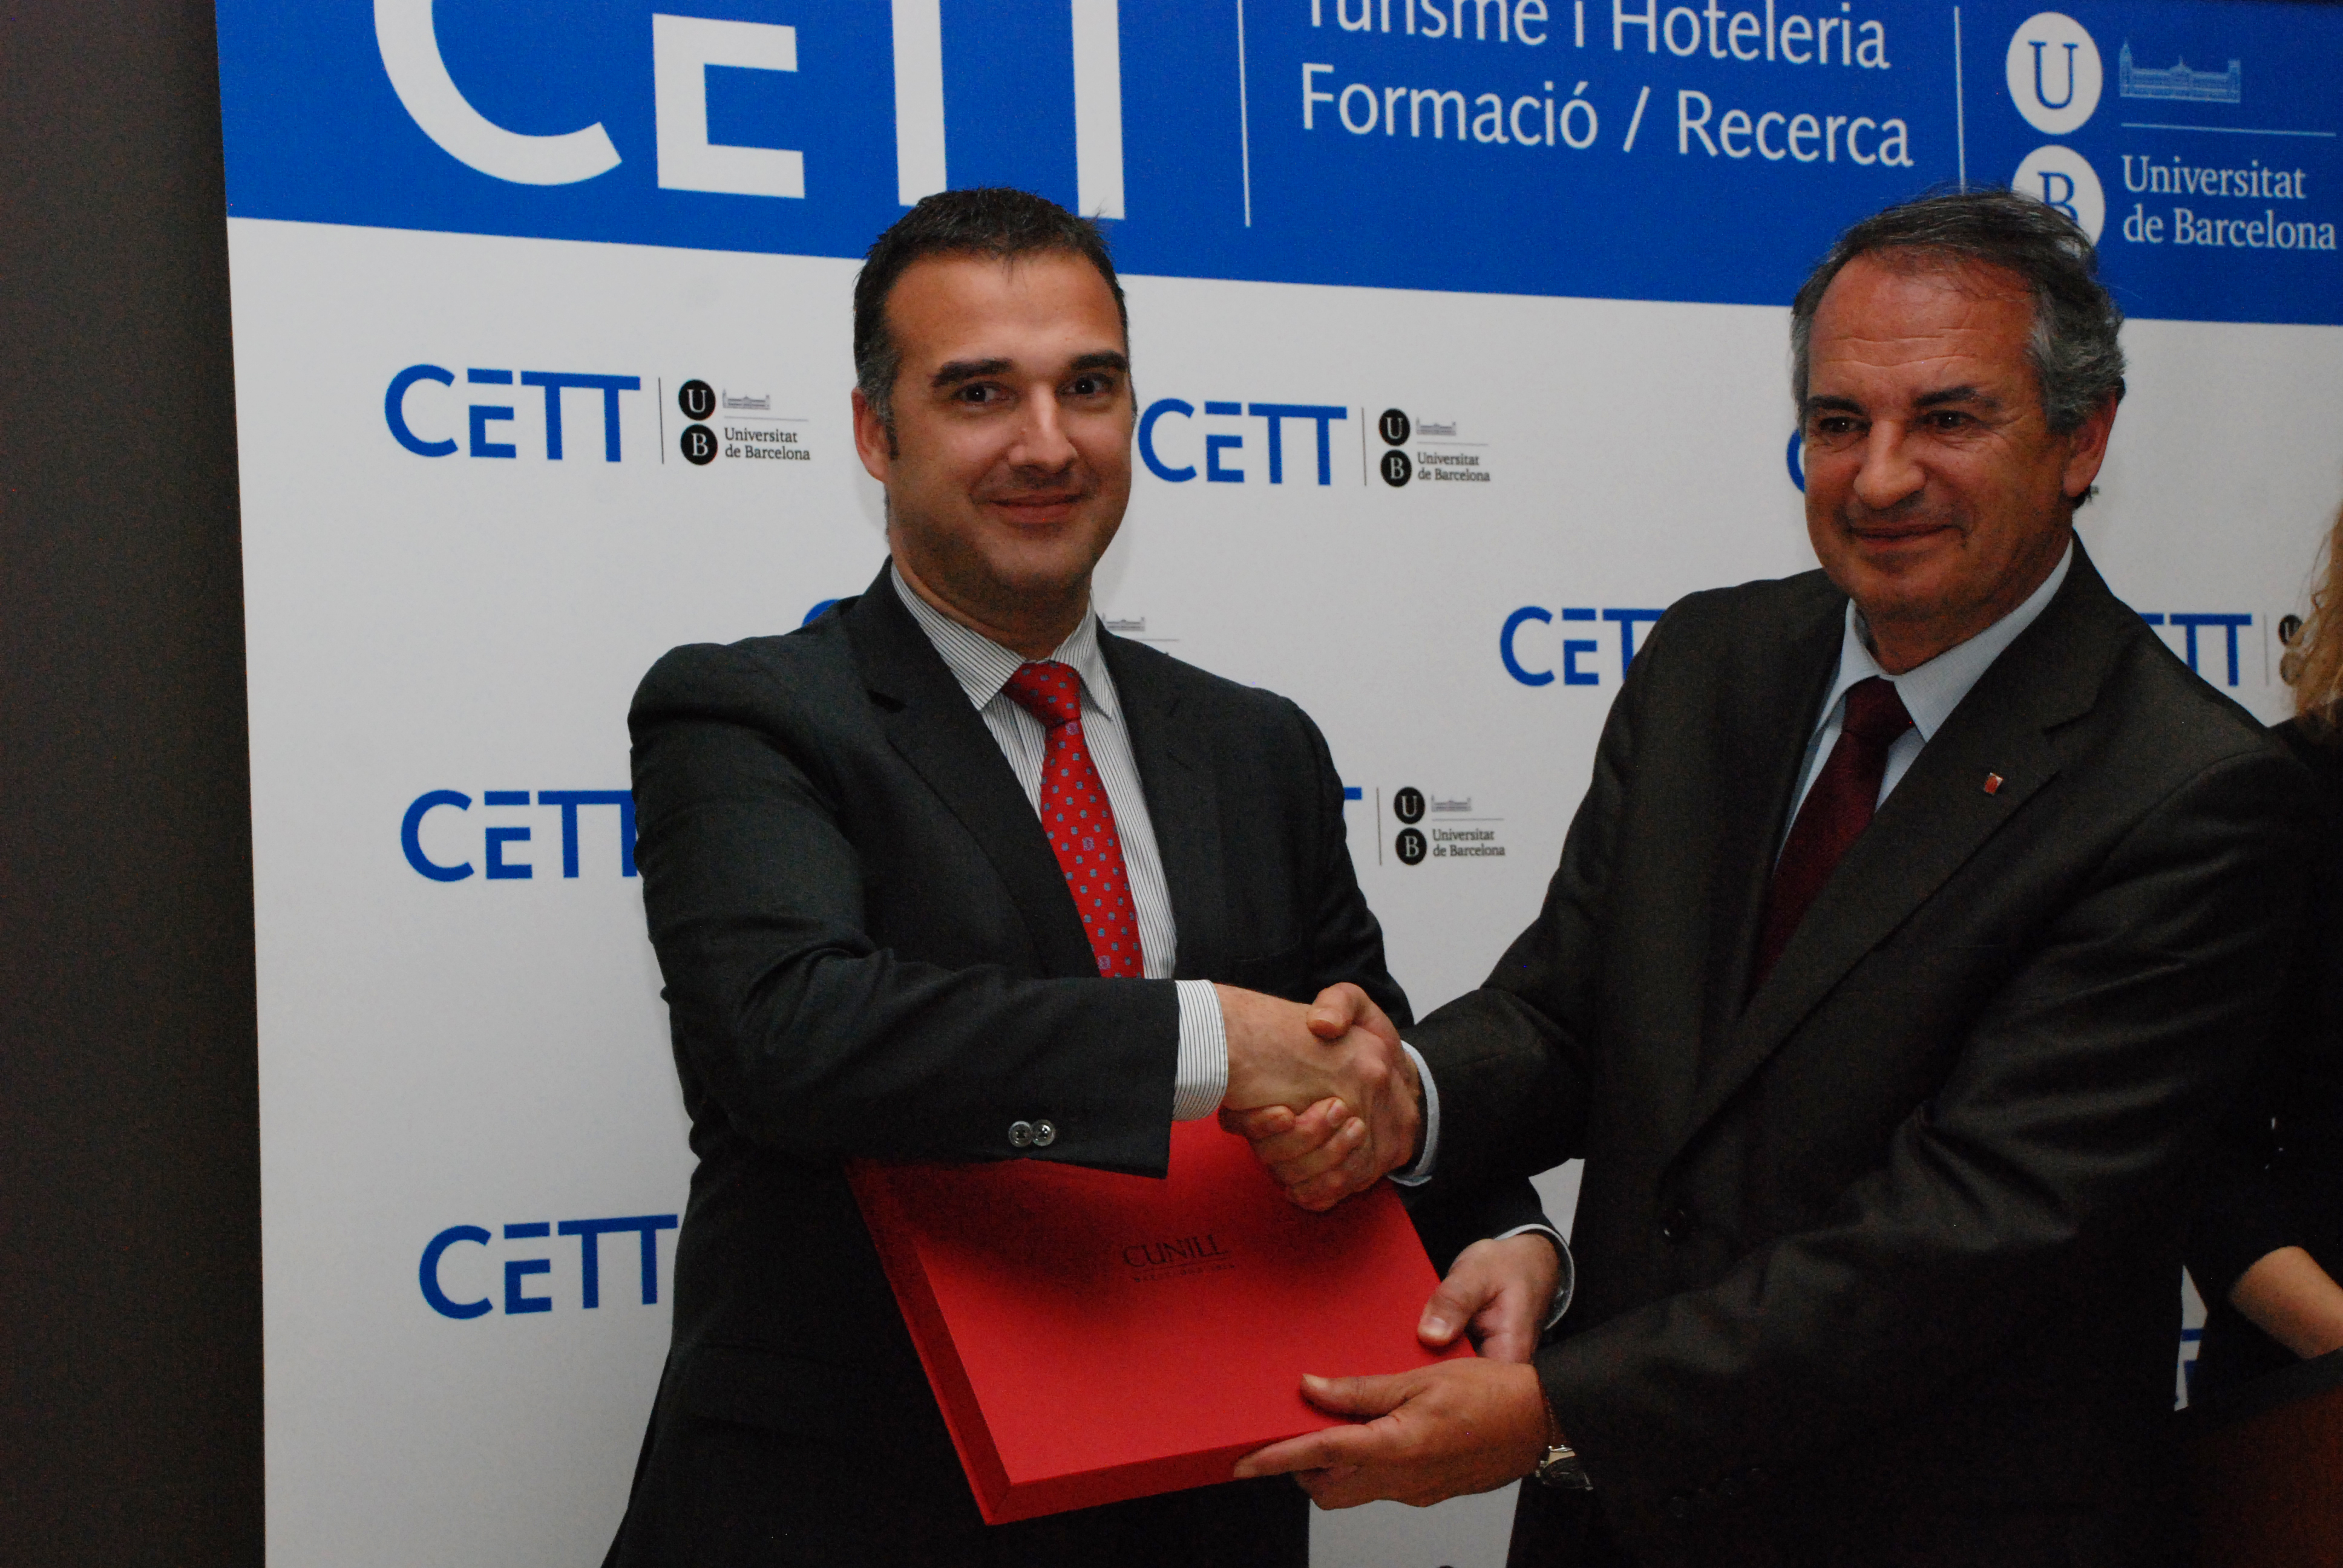 Fotografia de: Hilton guardonada com a millor empresa col·laboradora del CETT | CETT